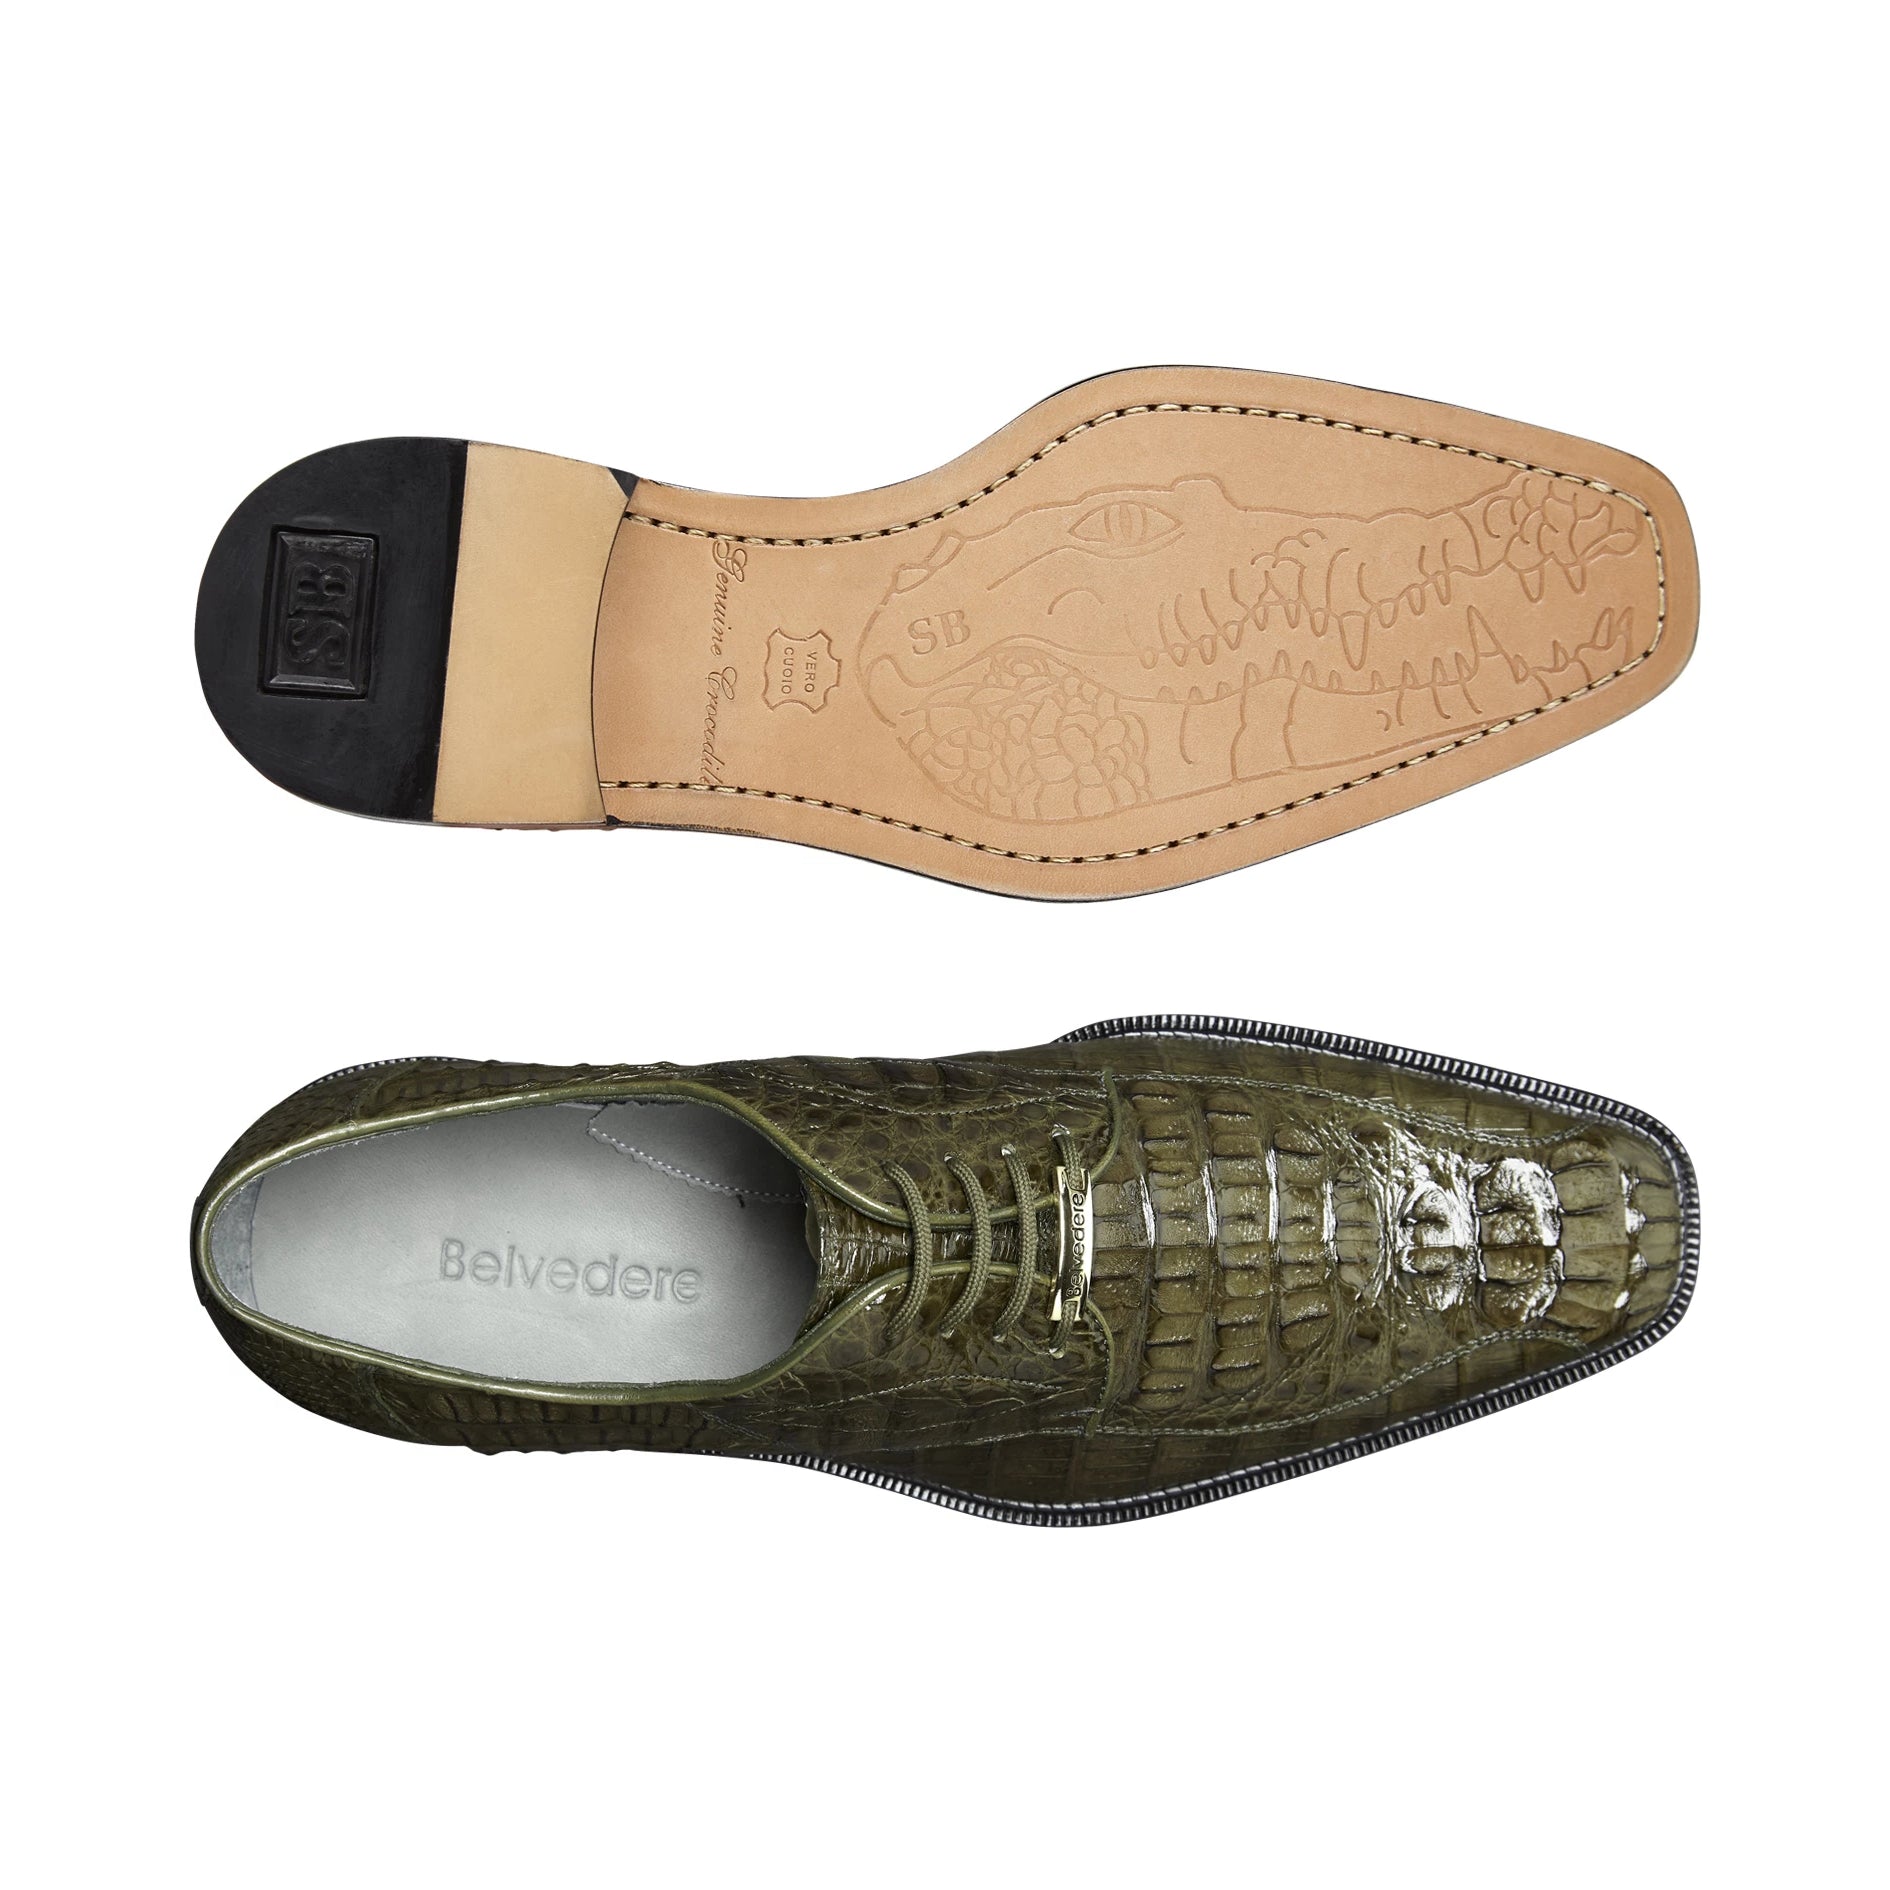 Craftsman Black Crocodile – The Shoe Room Doncaster